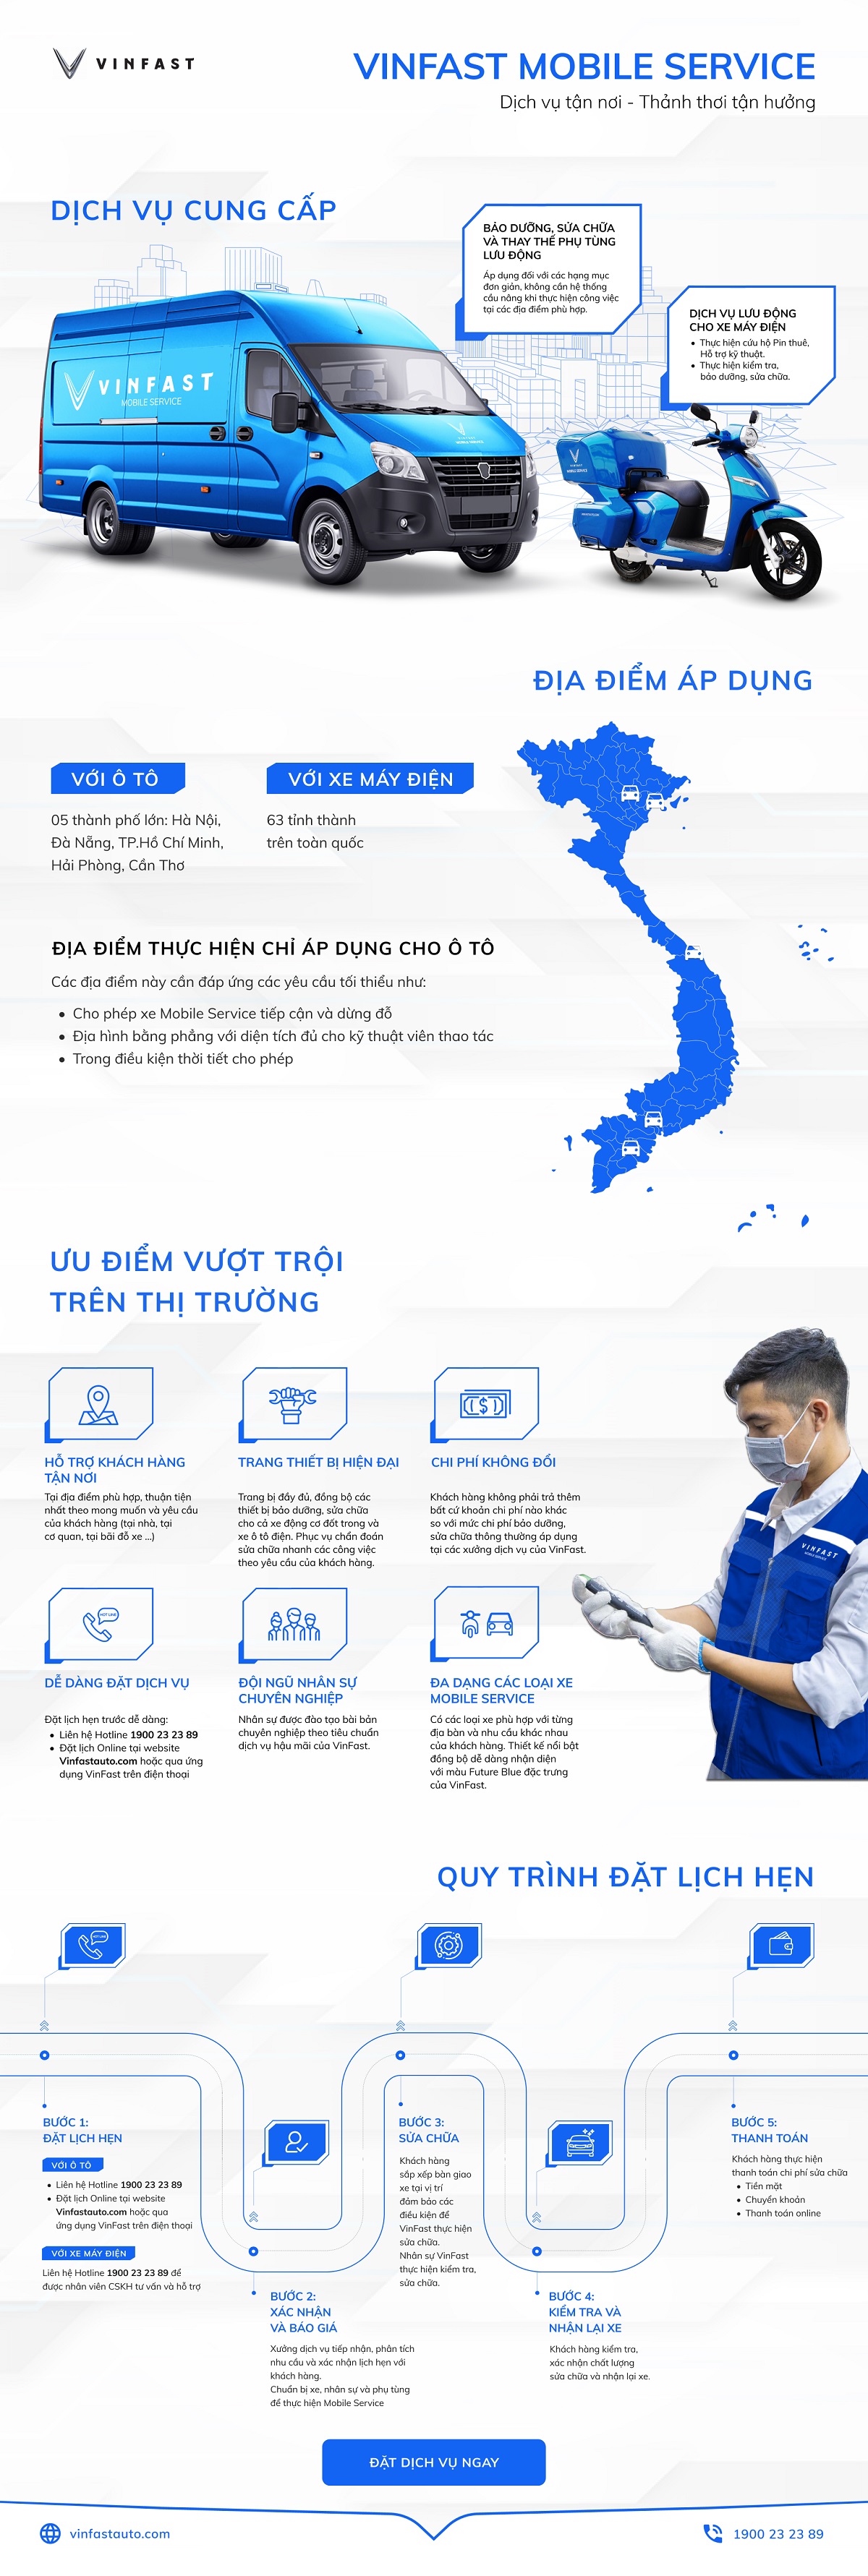 [Infographic] Những điểm ưu việt của dịch vụ sửa chữa lưu động VinFast Mobile Service infographic-mobile-service.jpeg